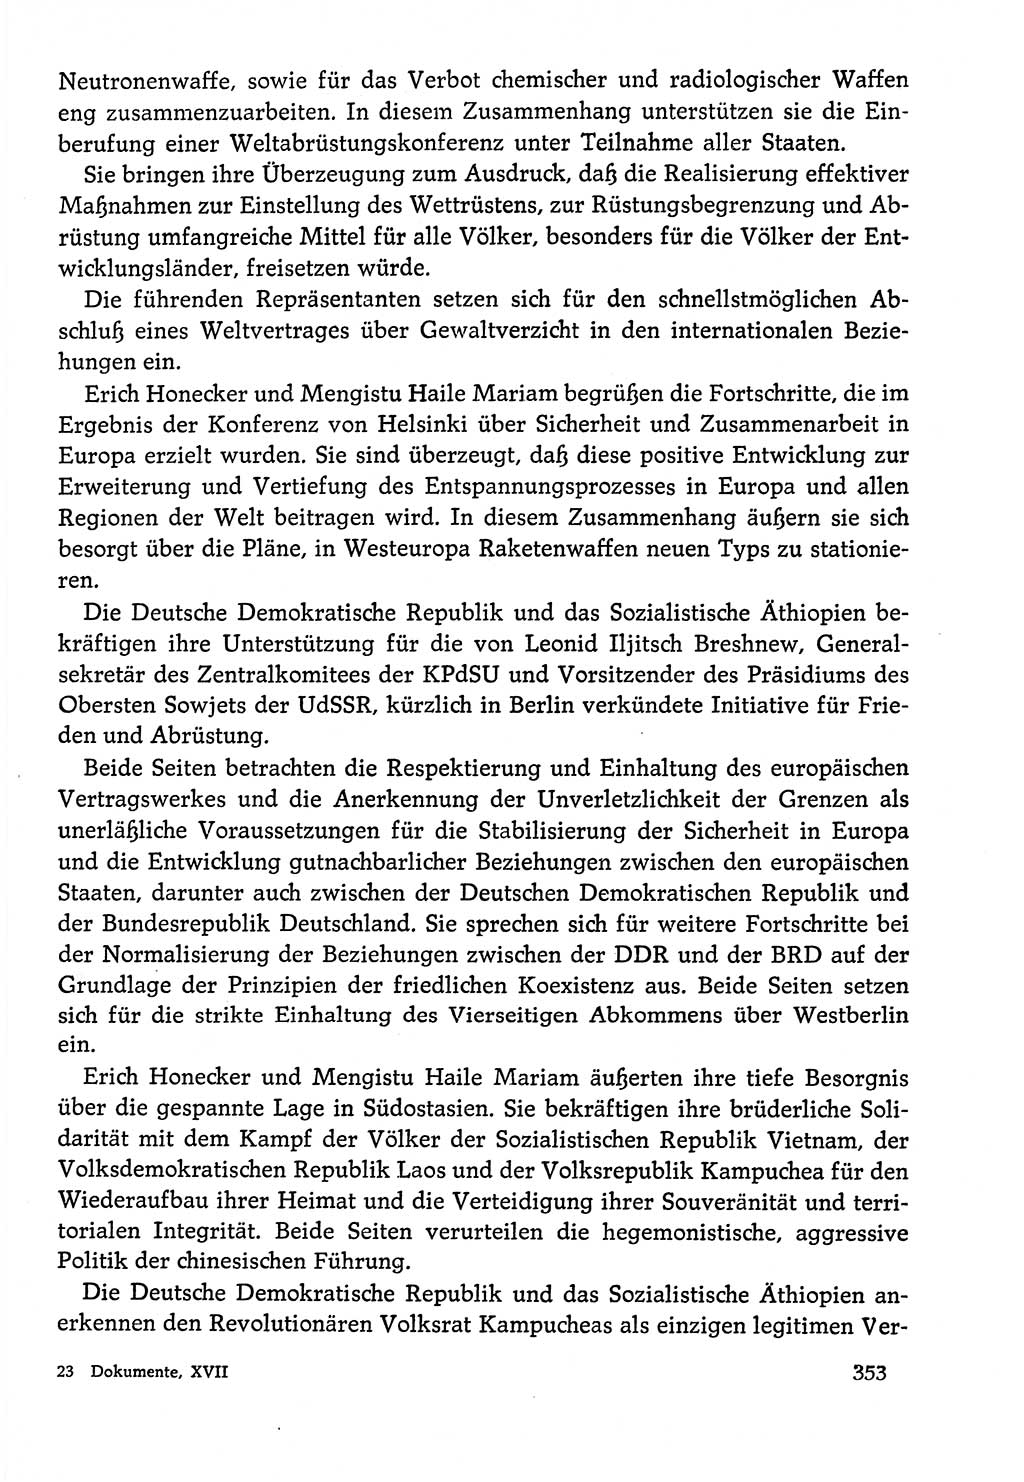 Dokumente der Sozialistischen Einheitspartei Deutschlands (SED) [Deutsche Demokratische Republik (DDR)] 1978-1979, Seite 353 (Dok. SED DDR 1978-1979, S. 353)